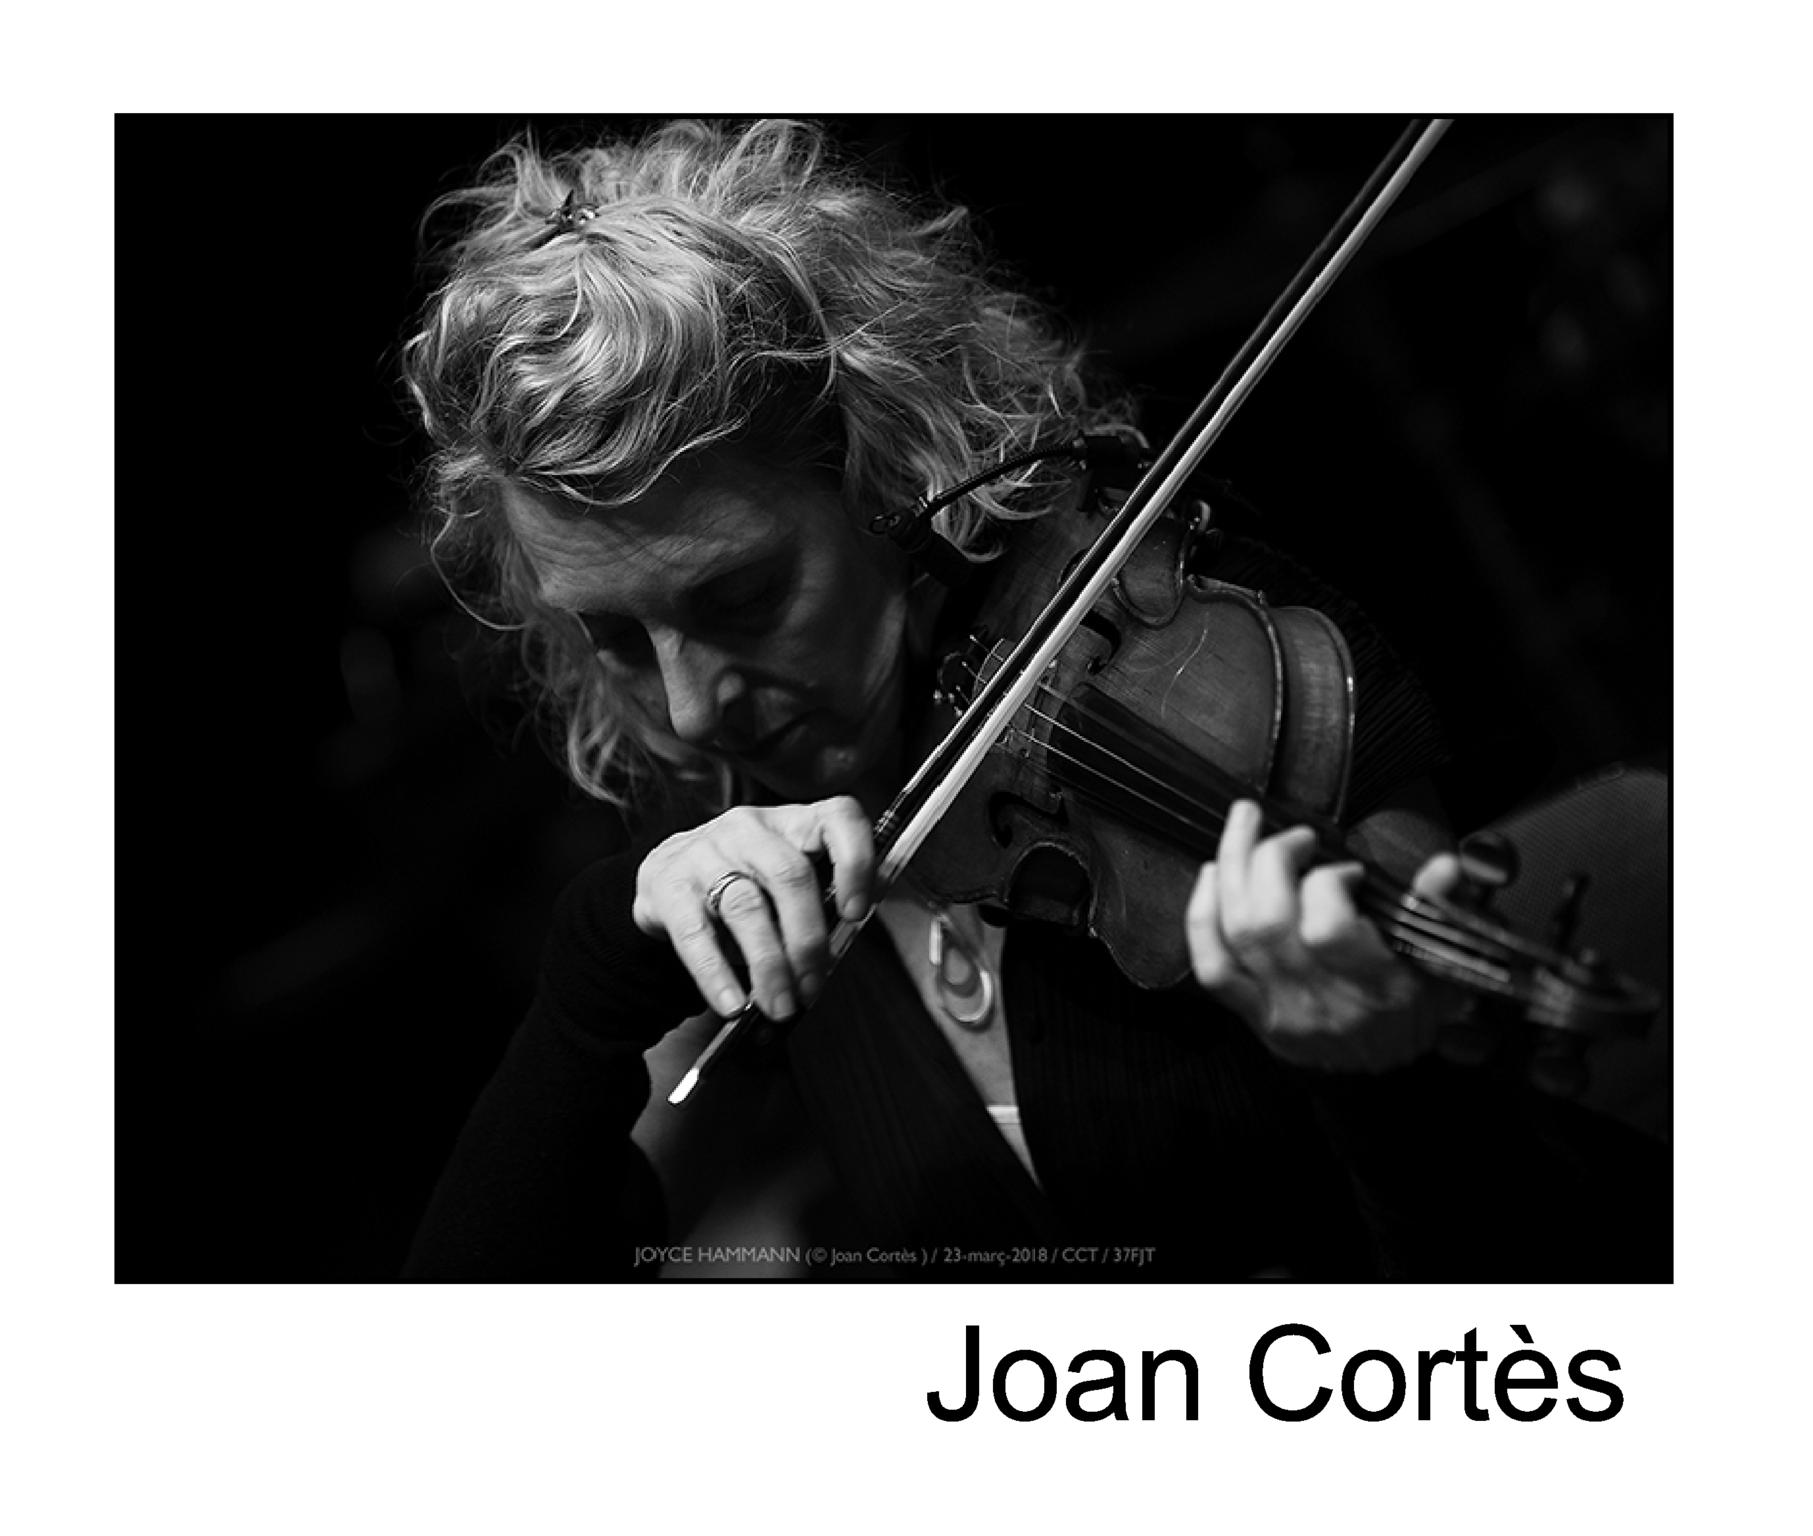  Joan Corts